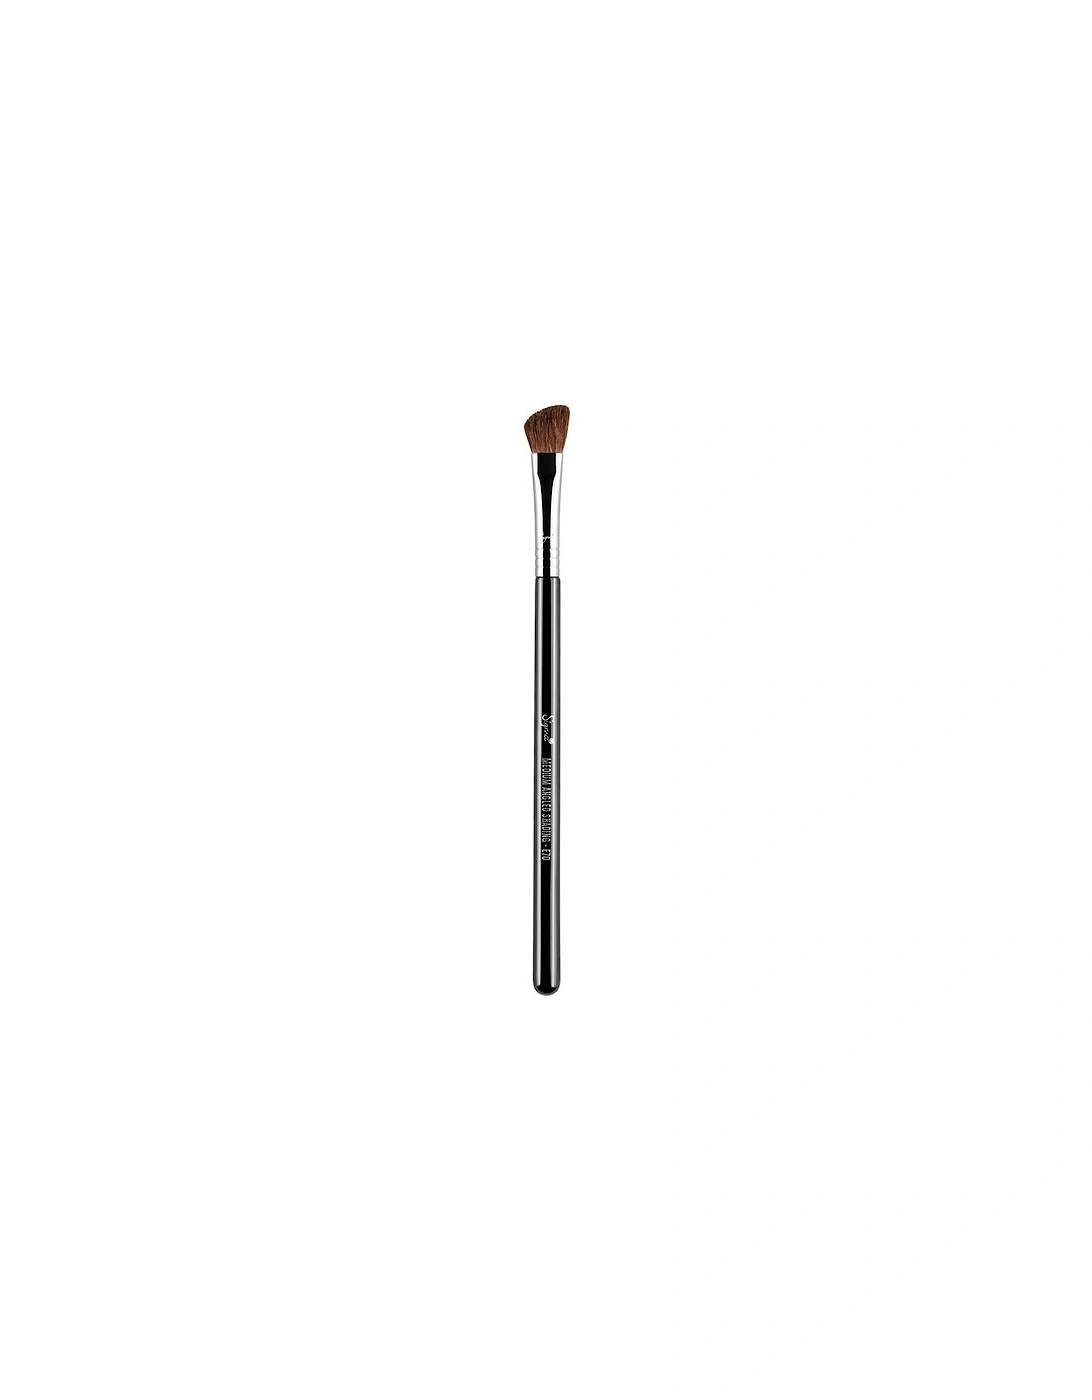 Beauty E70 - Medium Angled Shading Brush - Sigma, 2 of 1